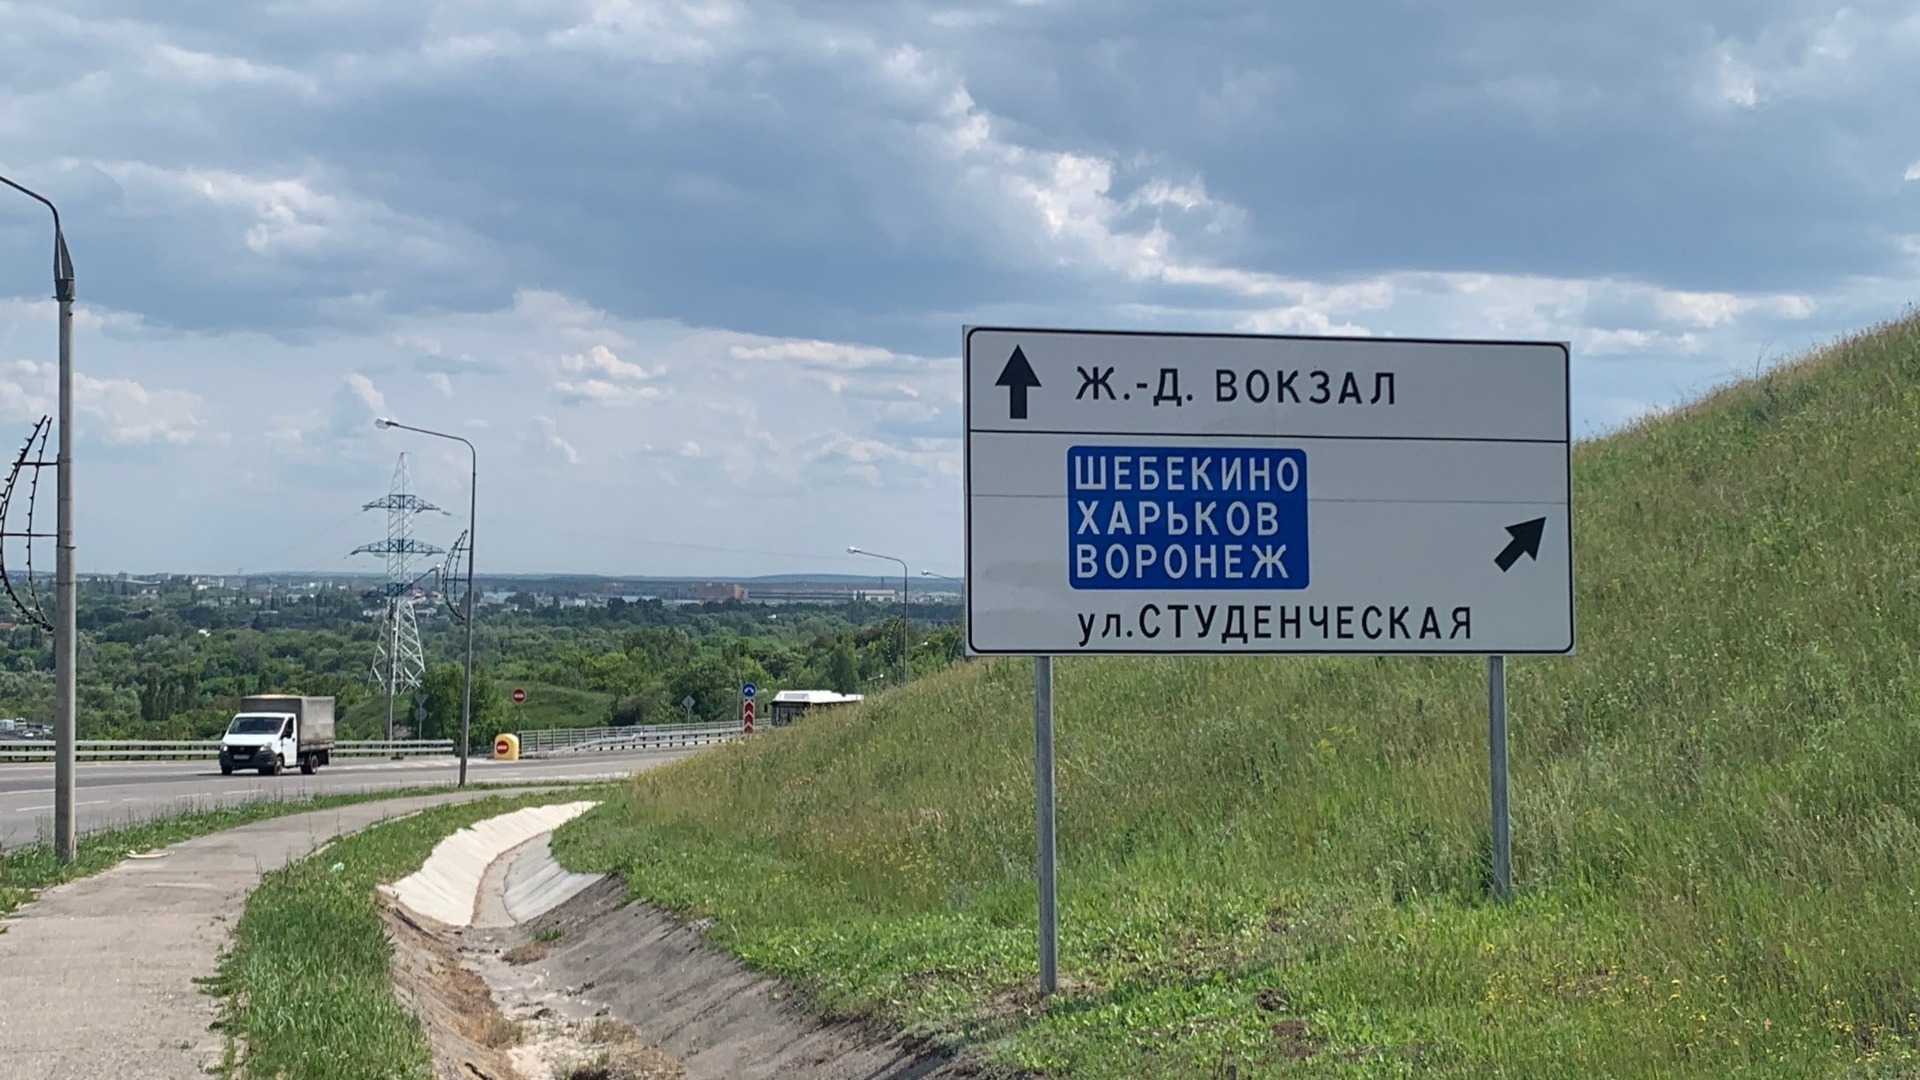 Порядка 800 шебекинцев с детьми отправятся в Калугу, Пензу и Ярославль